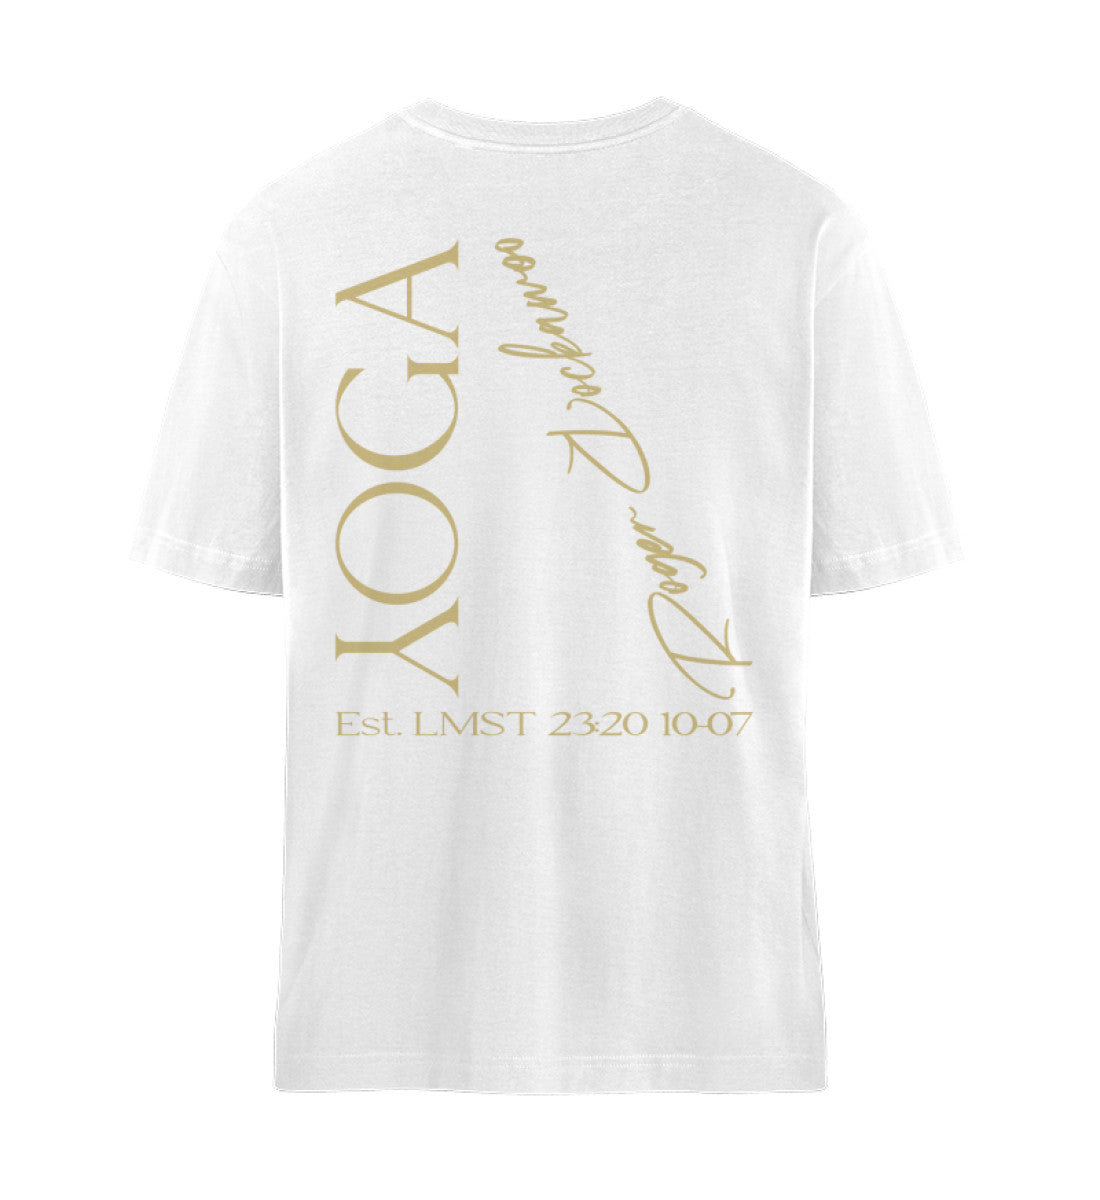 Weißes T-Shirt Unisex für Damen und Herren im Relaxed Fit bedruckt mit dem Design der Yoga Tree Kollektion von Roger Rockawoo